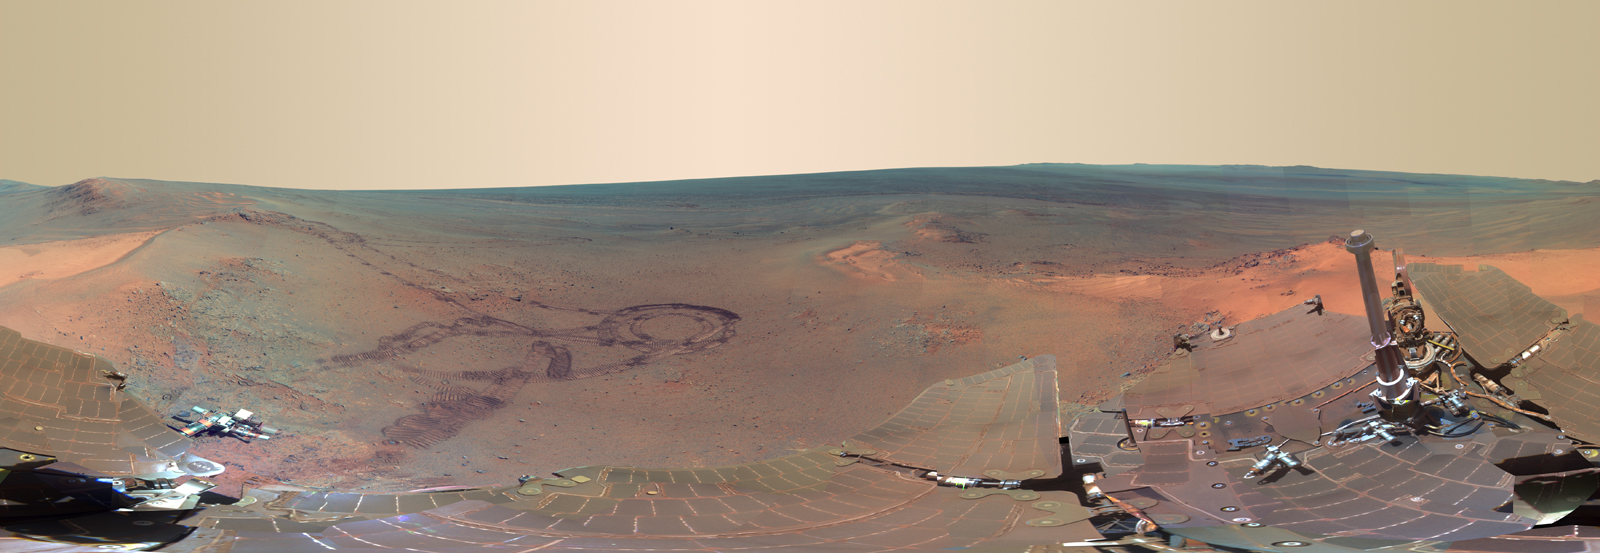 opportunity-rover-pancam.jpg